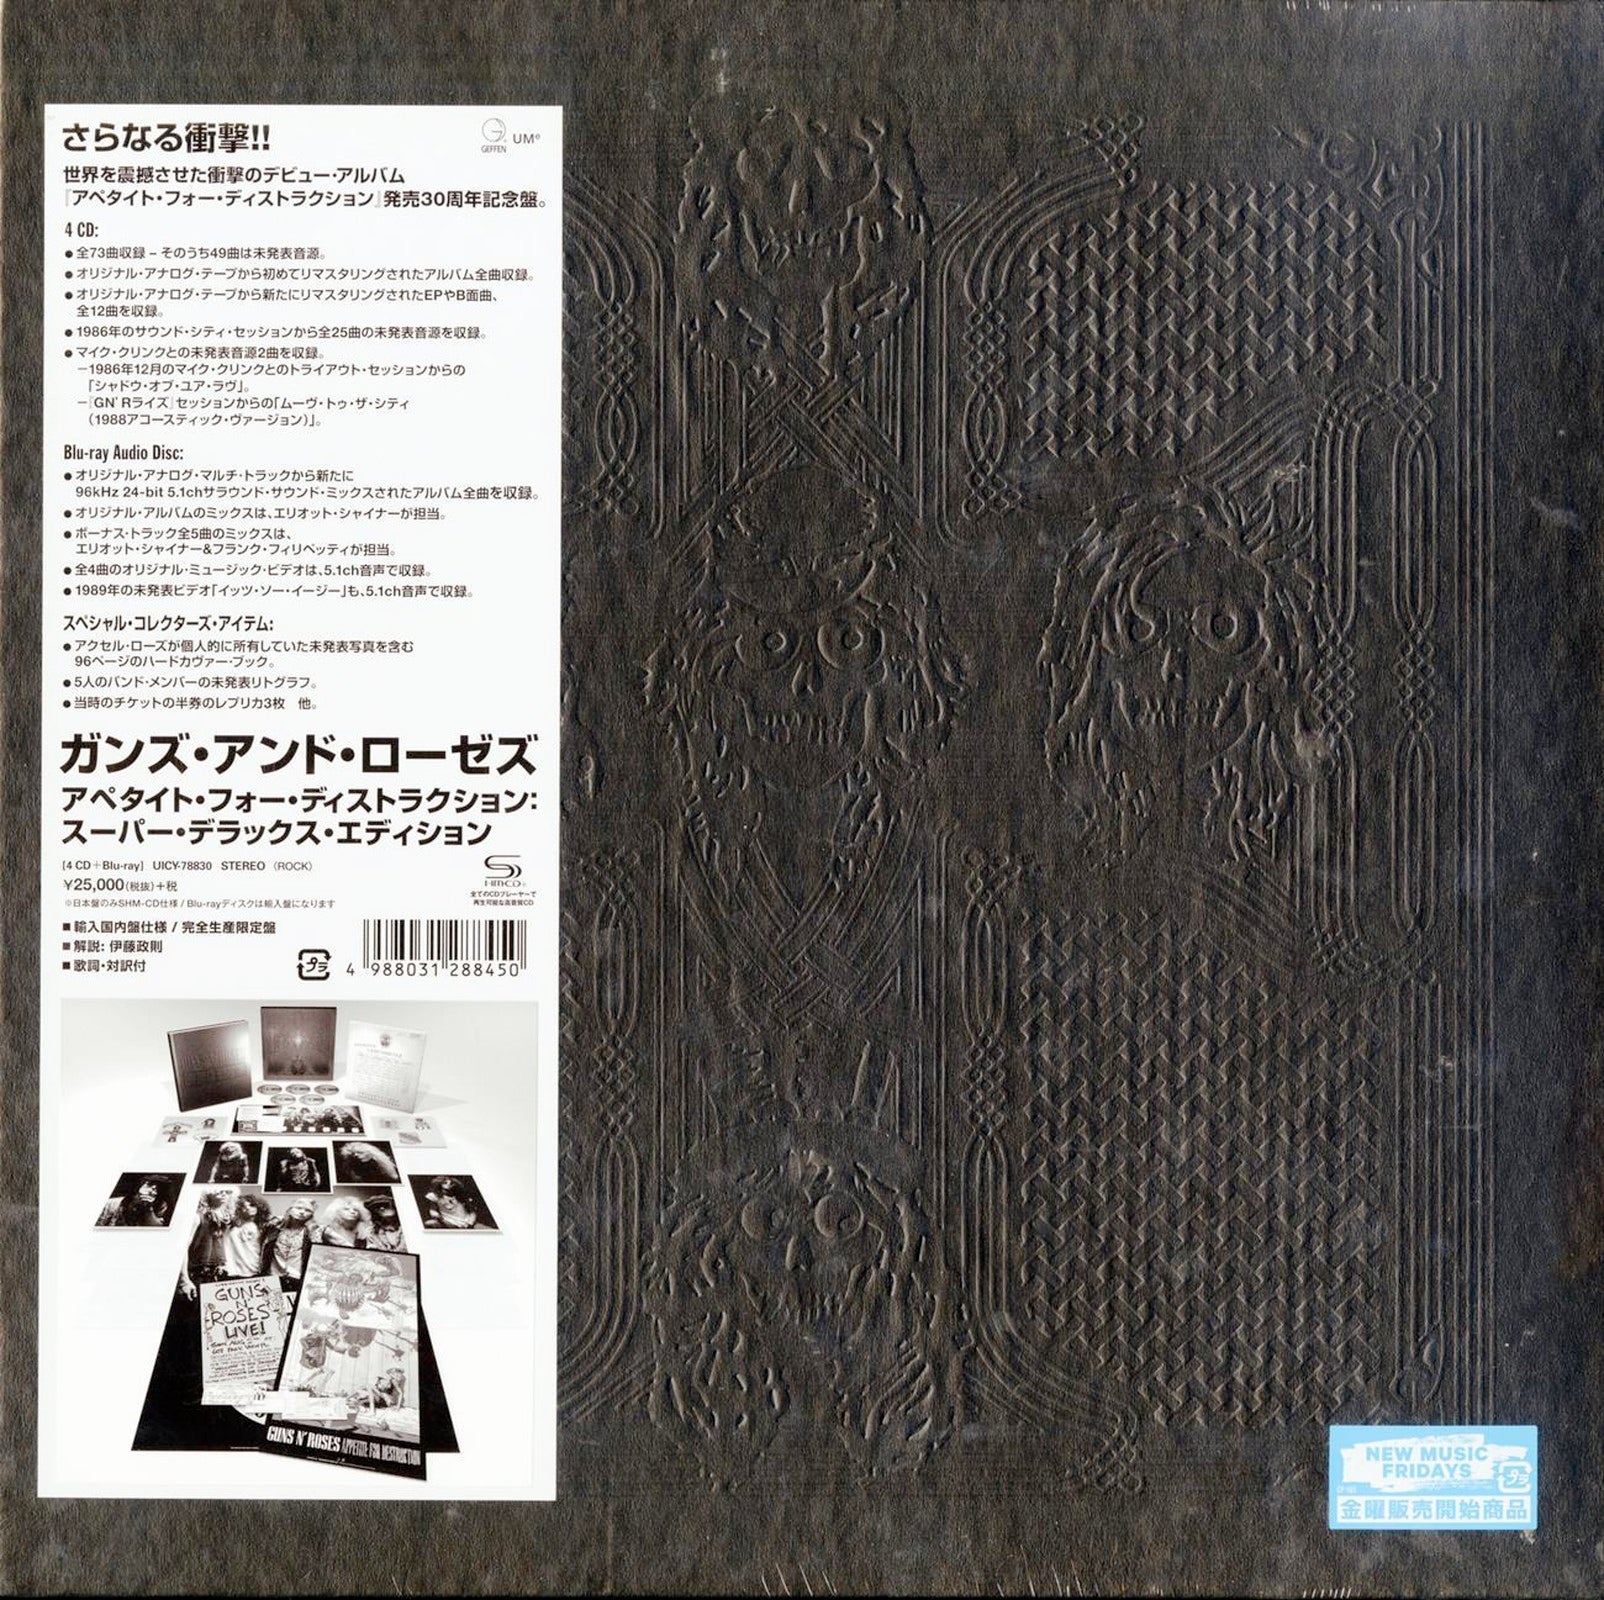 Guns N' Roses - Appetite For Destruction - Japan 4 CD+Blu-ray Bonus Tr – CDs  Vinyl Japan Store CD, Guns N' Roses, Hard Rock, Rock CDs